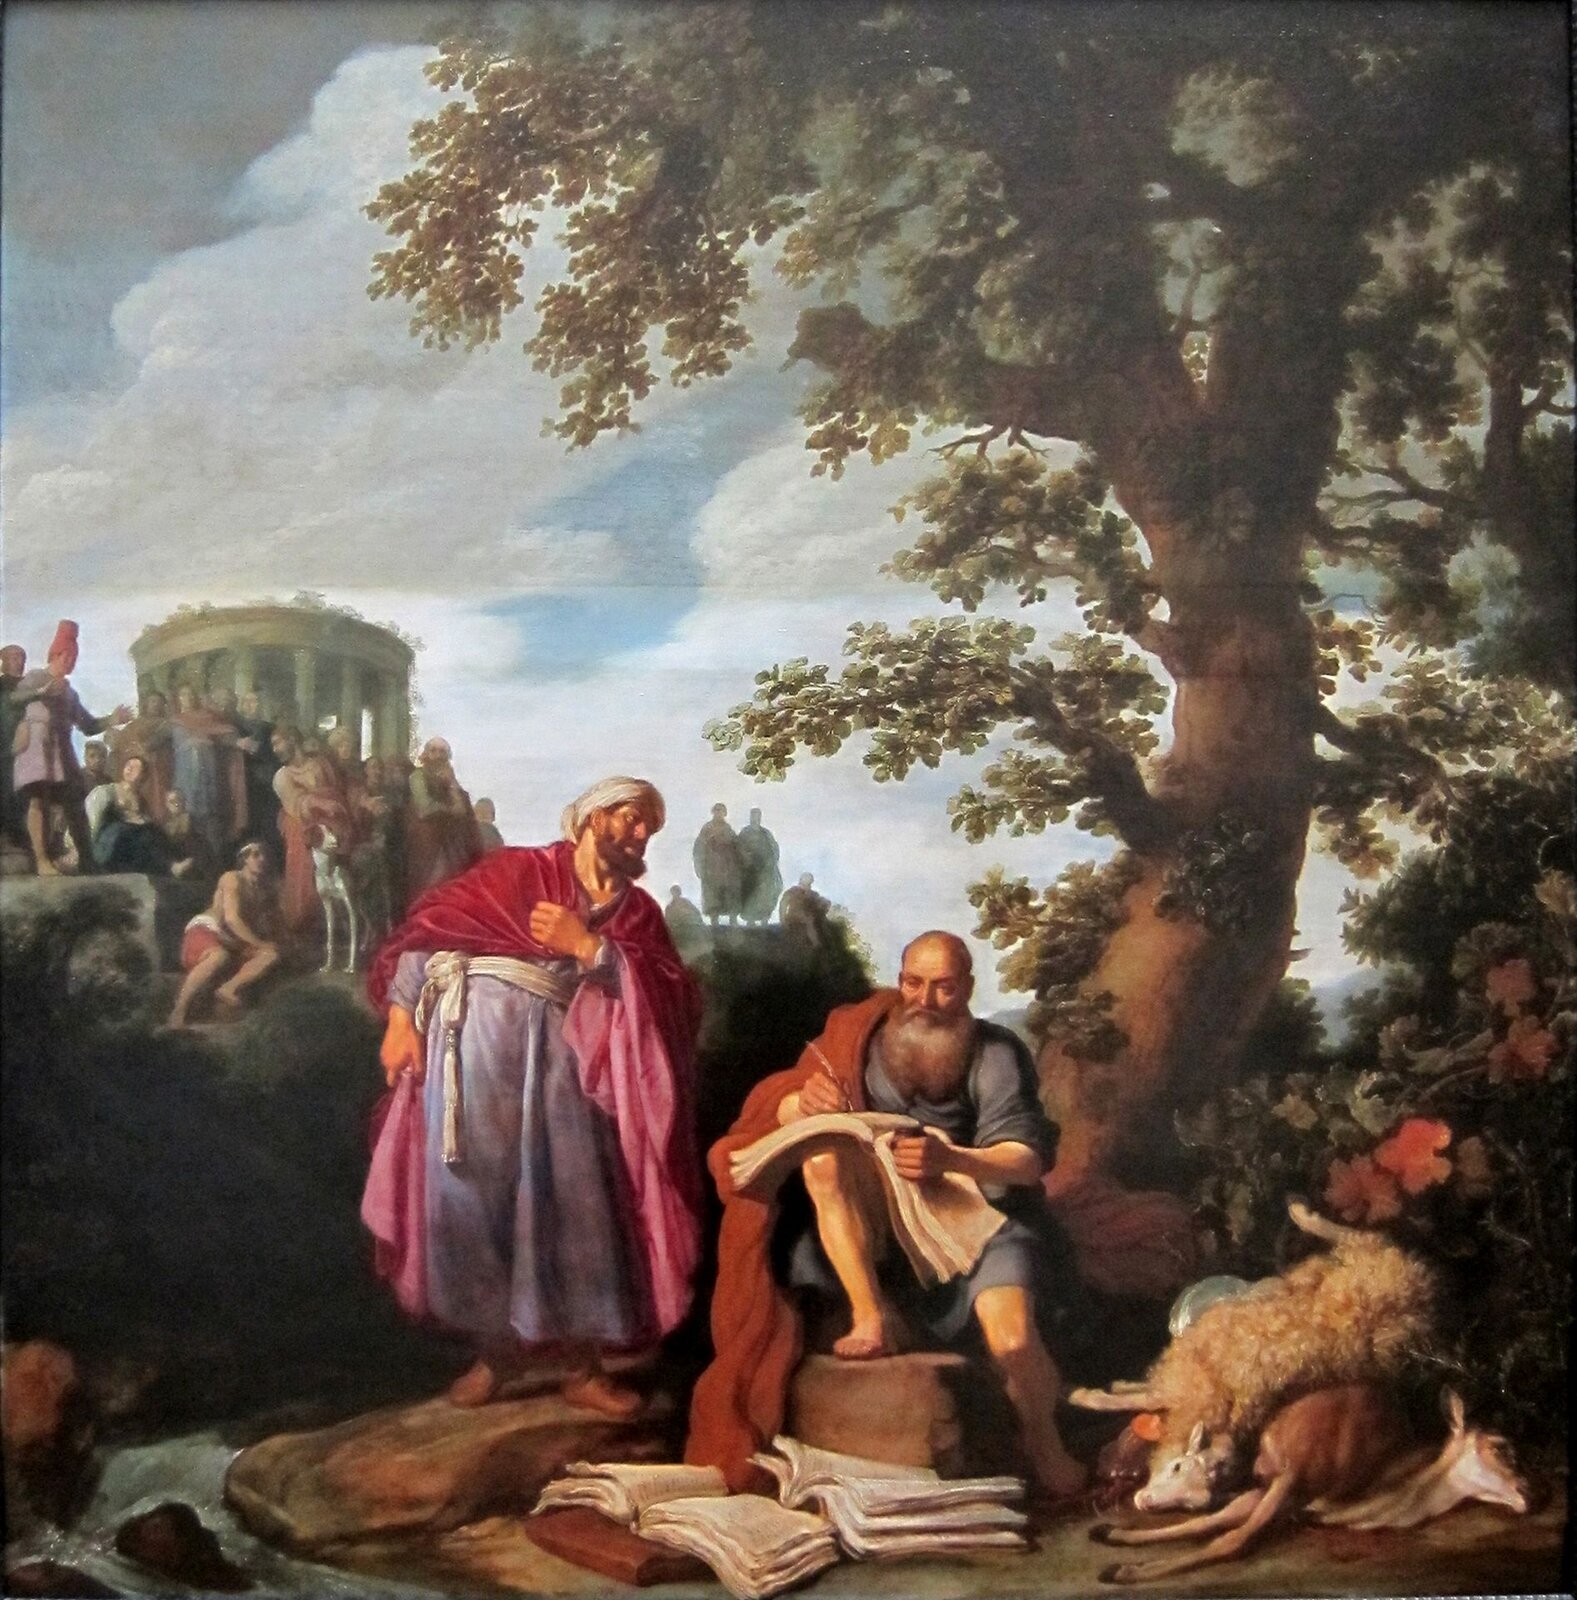 Ilustracja przedstawia pracę Pietera Lastmana pod tytułem „Hipokrates składa wizytę Demokrytowi. Na pierwszym planie znajdują się dwaj starsi mężczyźni. Jeden z nich (po lewej stronie) ubrany jest w niebieską szatę, czerwoną narzutę oraz biały turban, przygląda się drugiemu mężczyźnie siedzącego na kamieniu i tworzącego zapiski w księdze – łysemu, brodatemu starcowi, który ubrany jest w niebieską szatę oraz czerwoną narzutę. Obok mężczyzn widoczne są księgi, rzeka, oraz truchła zwierząt – owcy i sarny. Mężczyźni siedzą pod wysokim drzewem. W tle widoczni są ludzie siedzący na skarpie obok  kolumnowego budynku.  